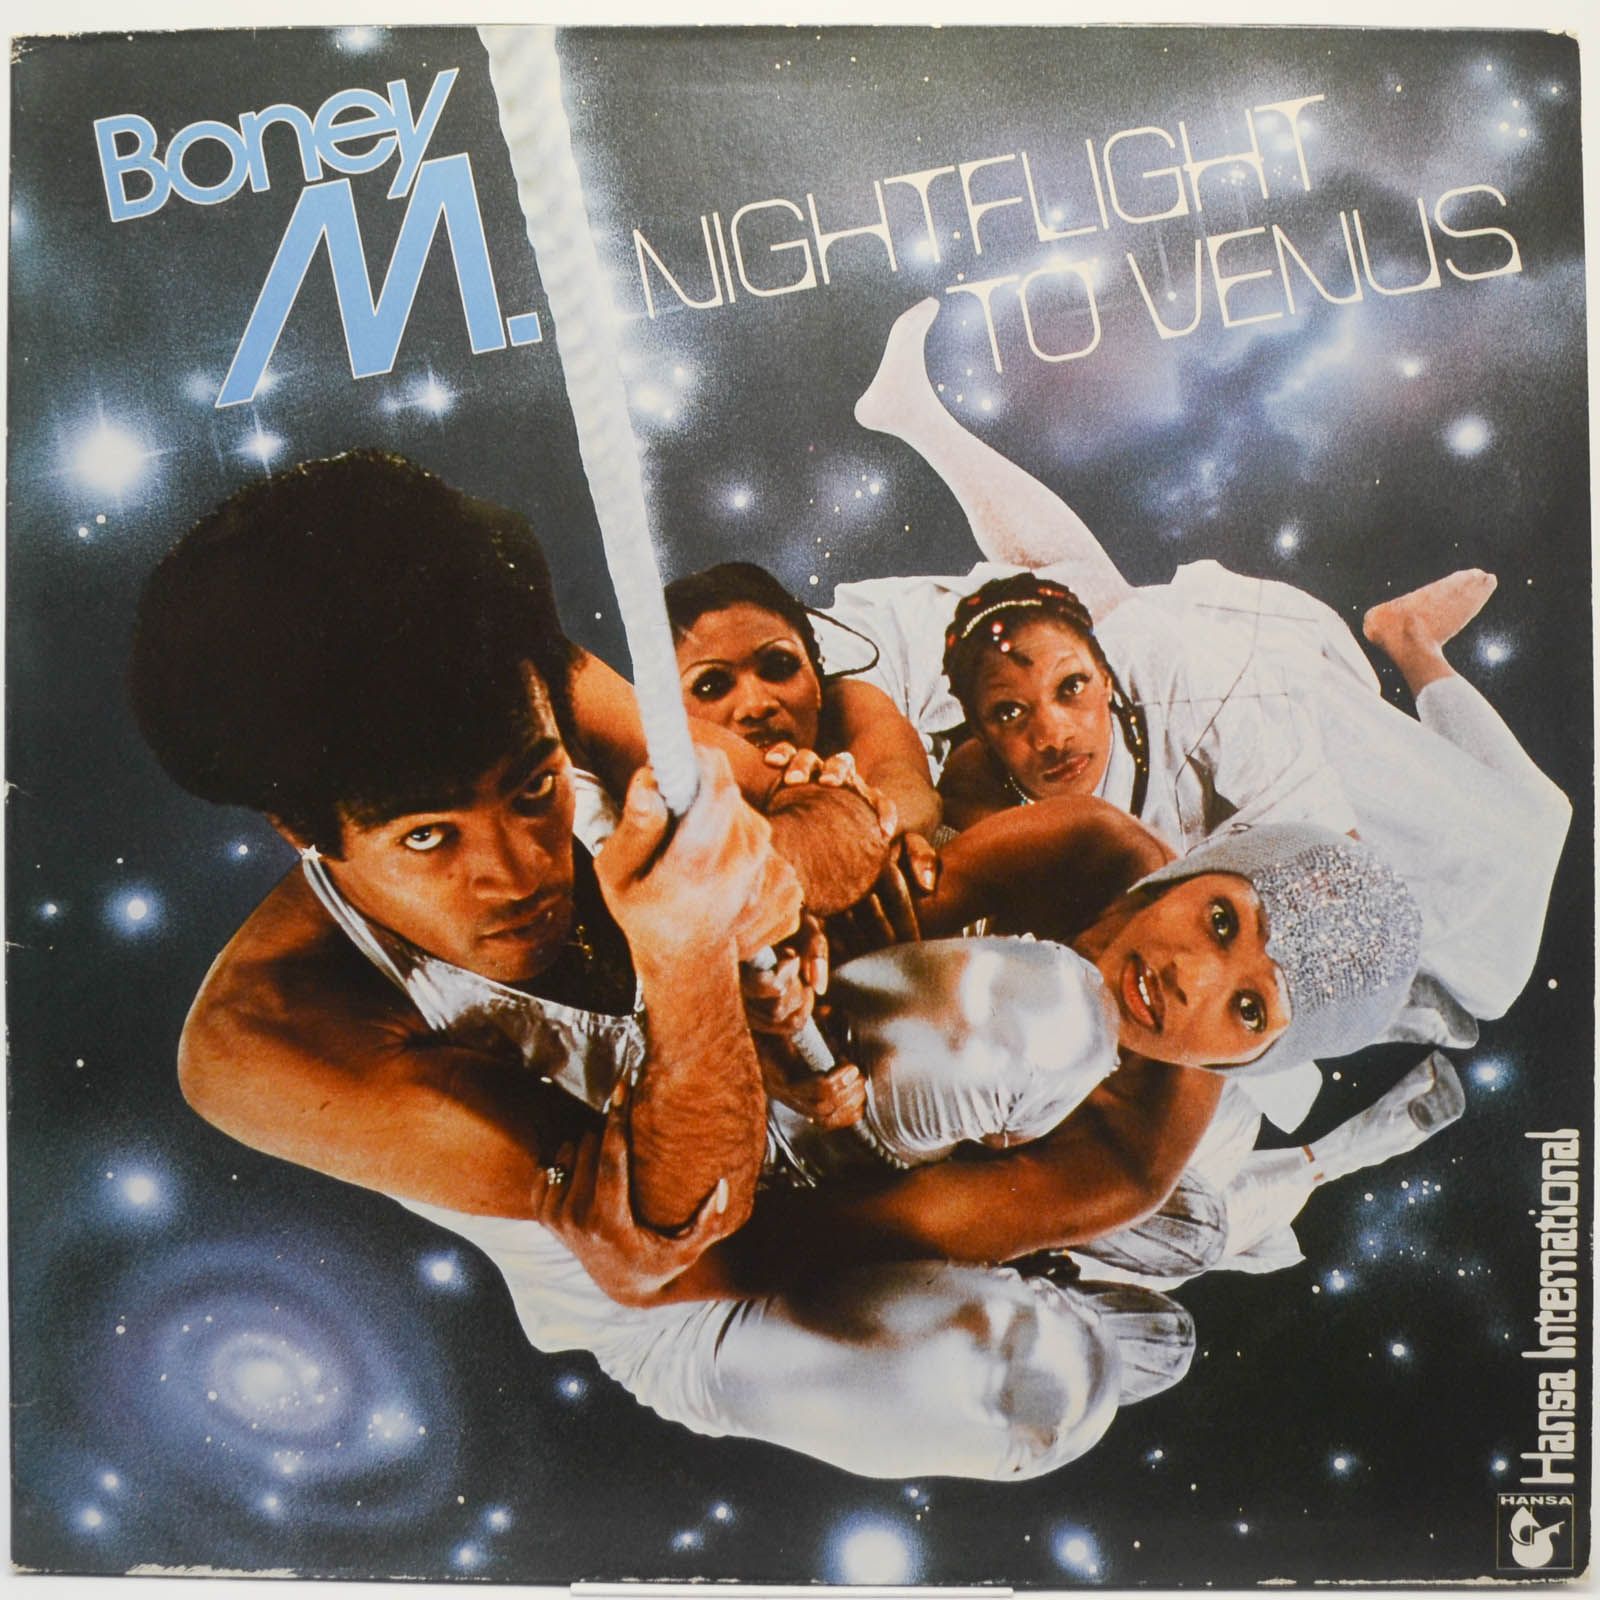 Boney m nightflight. Boney m Nightflight to Venus 1978. Boney m Sunny винил 1976. Пластинка Boney m Nightflight to Venus. Обложки виниловых пластинок Бони м.